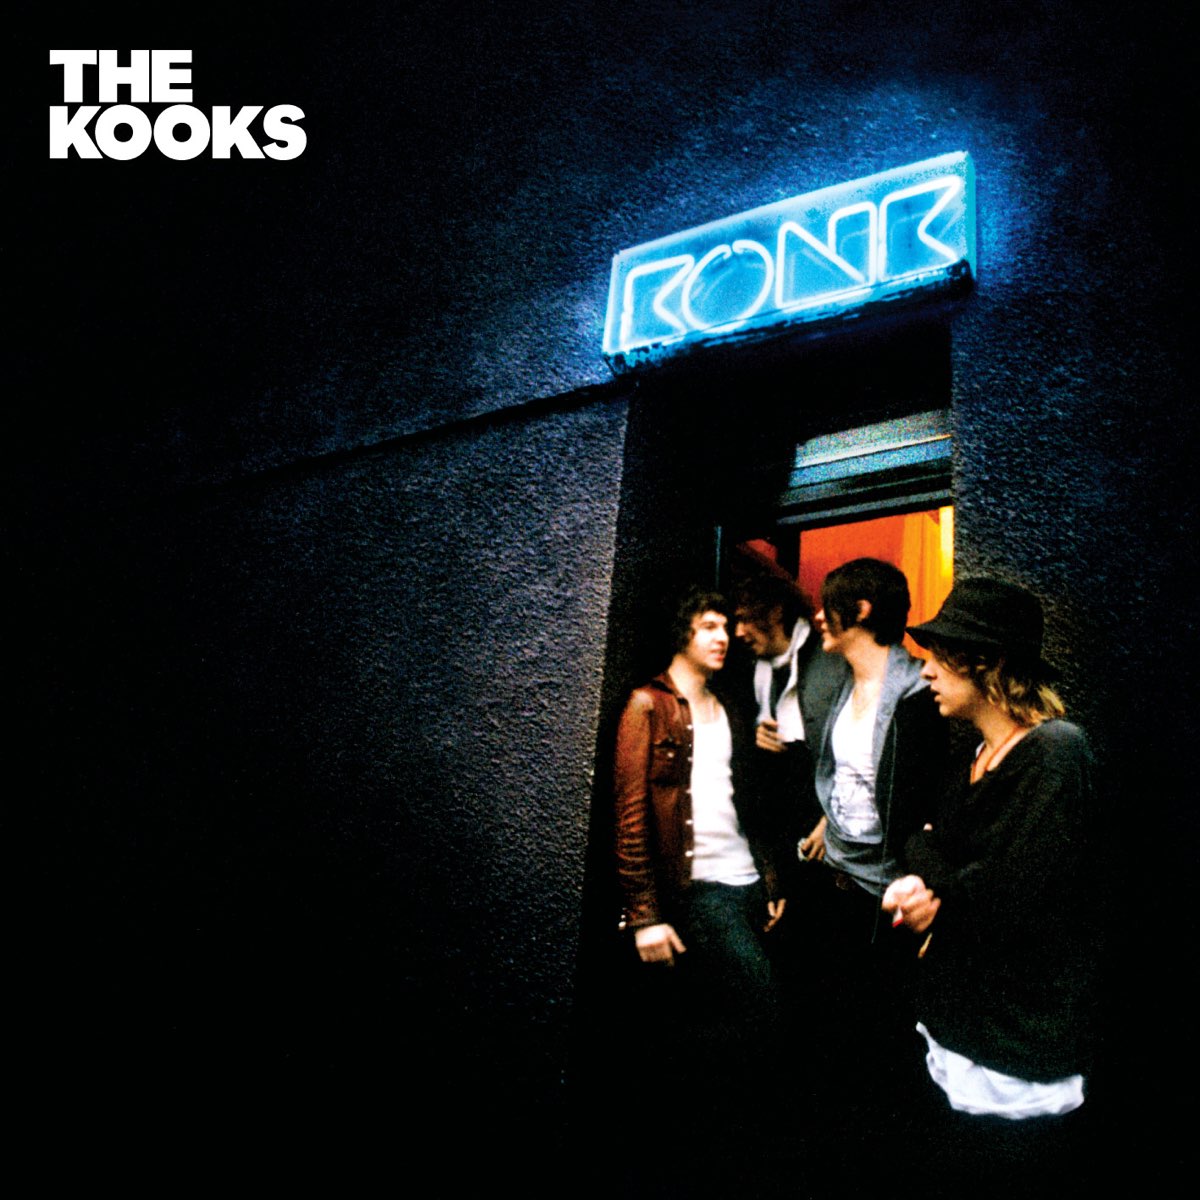 The Kooks — Gap cover artwork